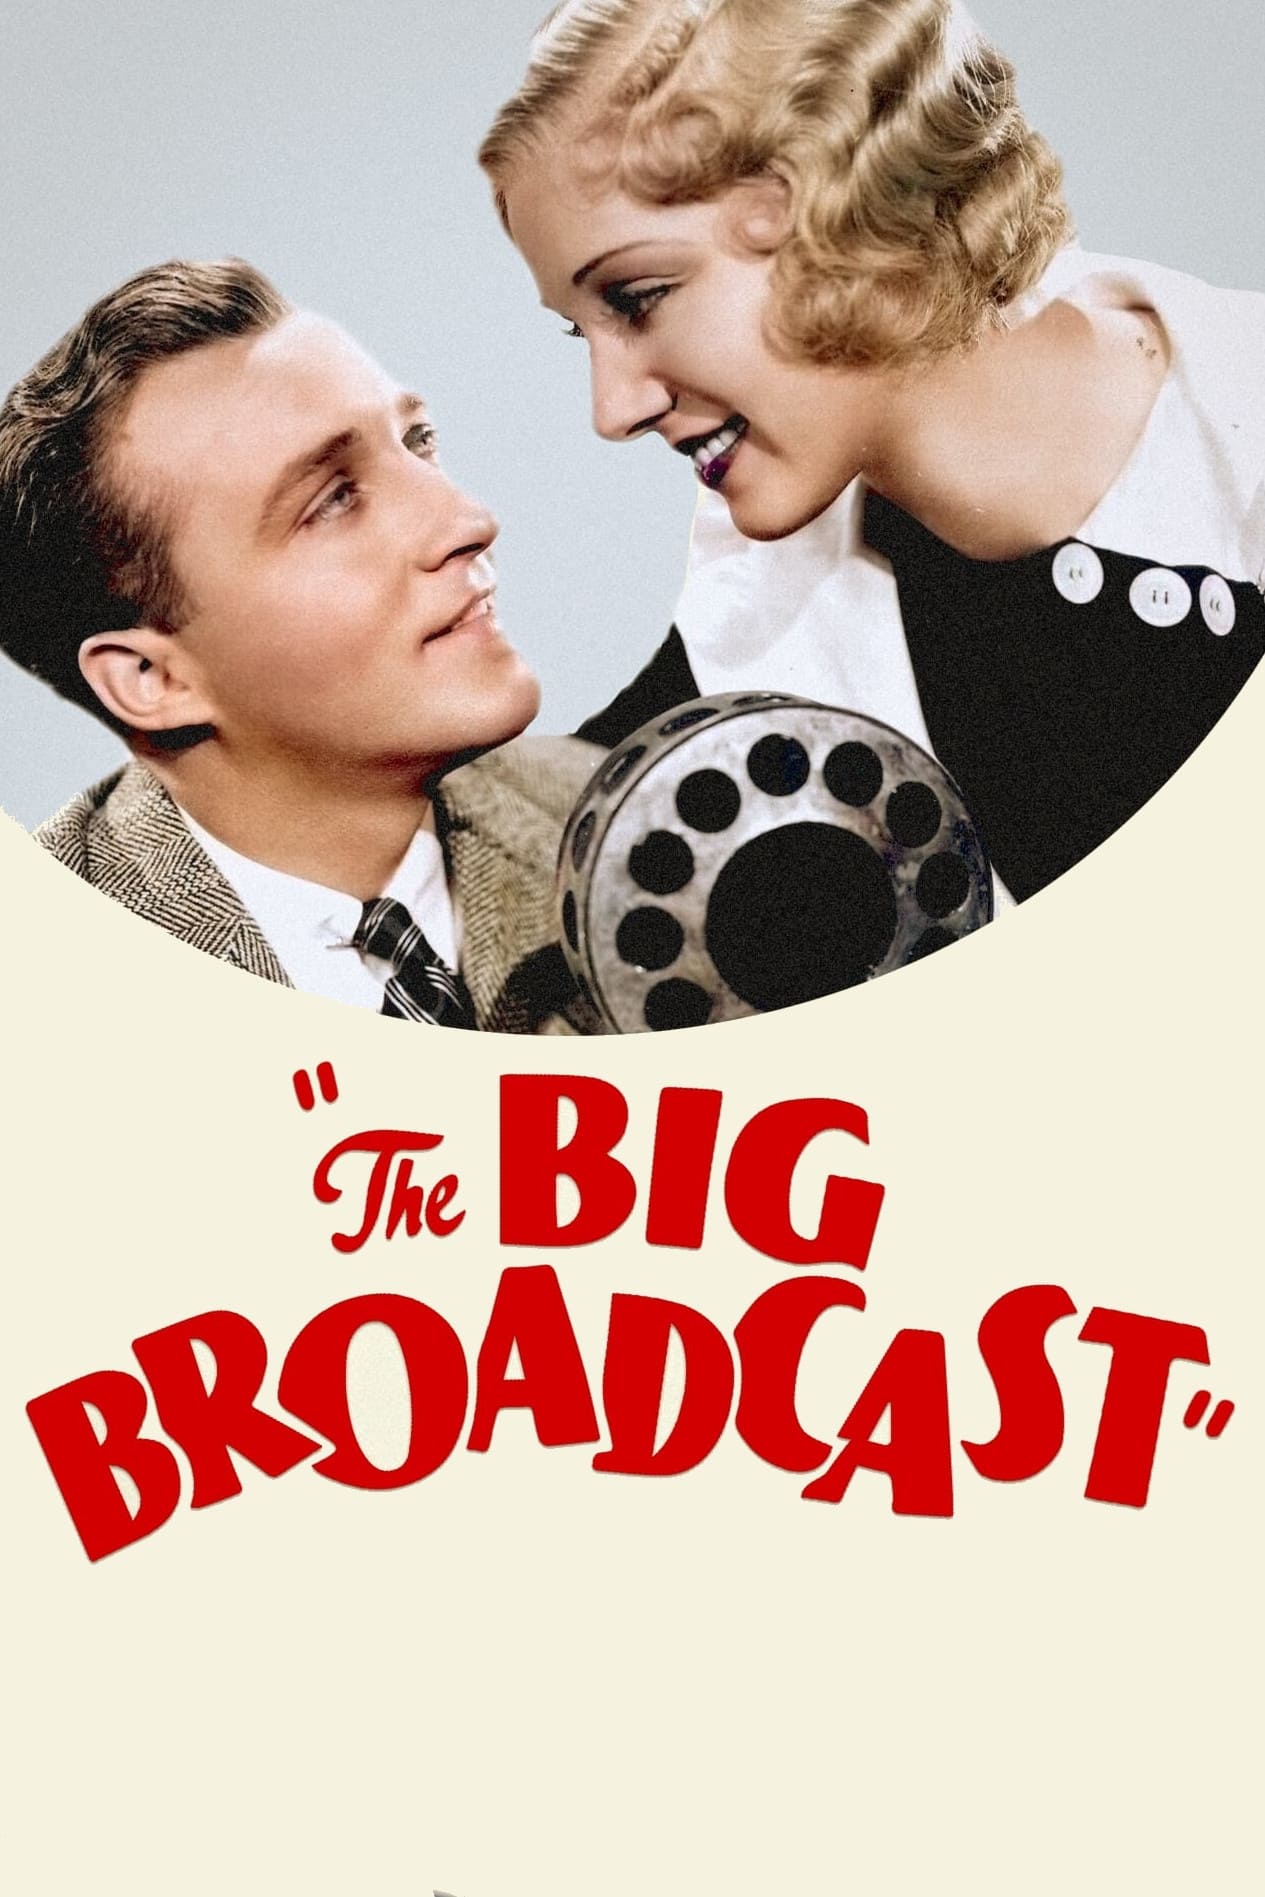 The Big Broadcast (1932)